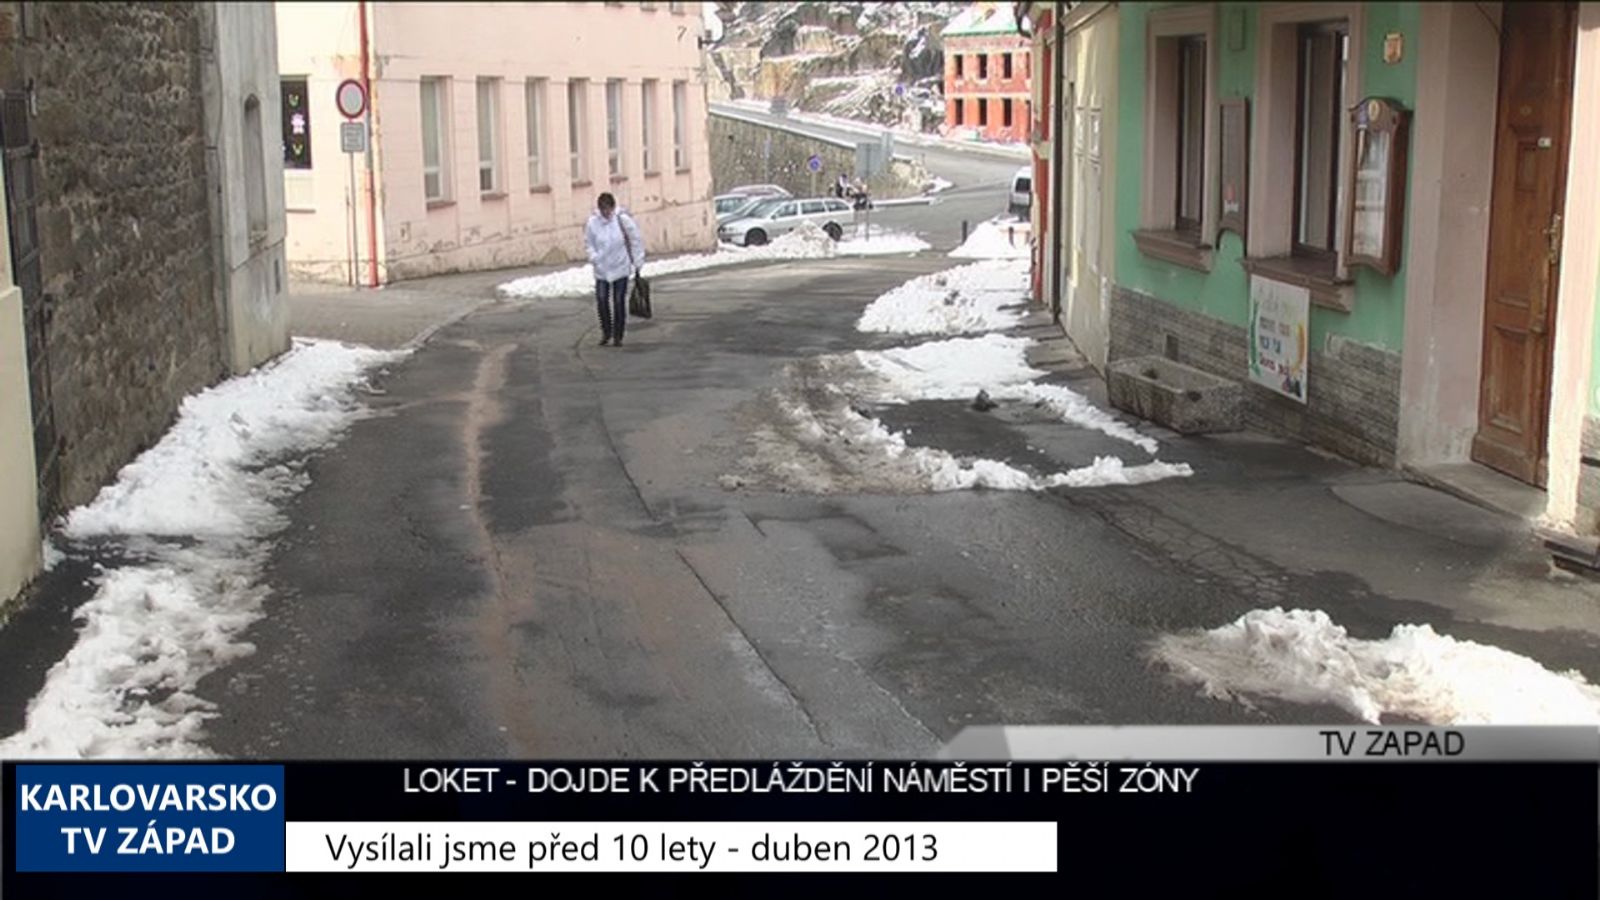 2013 – Loket: Dojde k předláždění náměstí i pěší zóny (TV Západ)